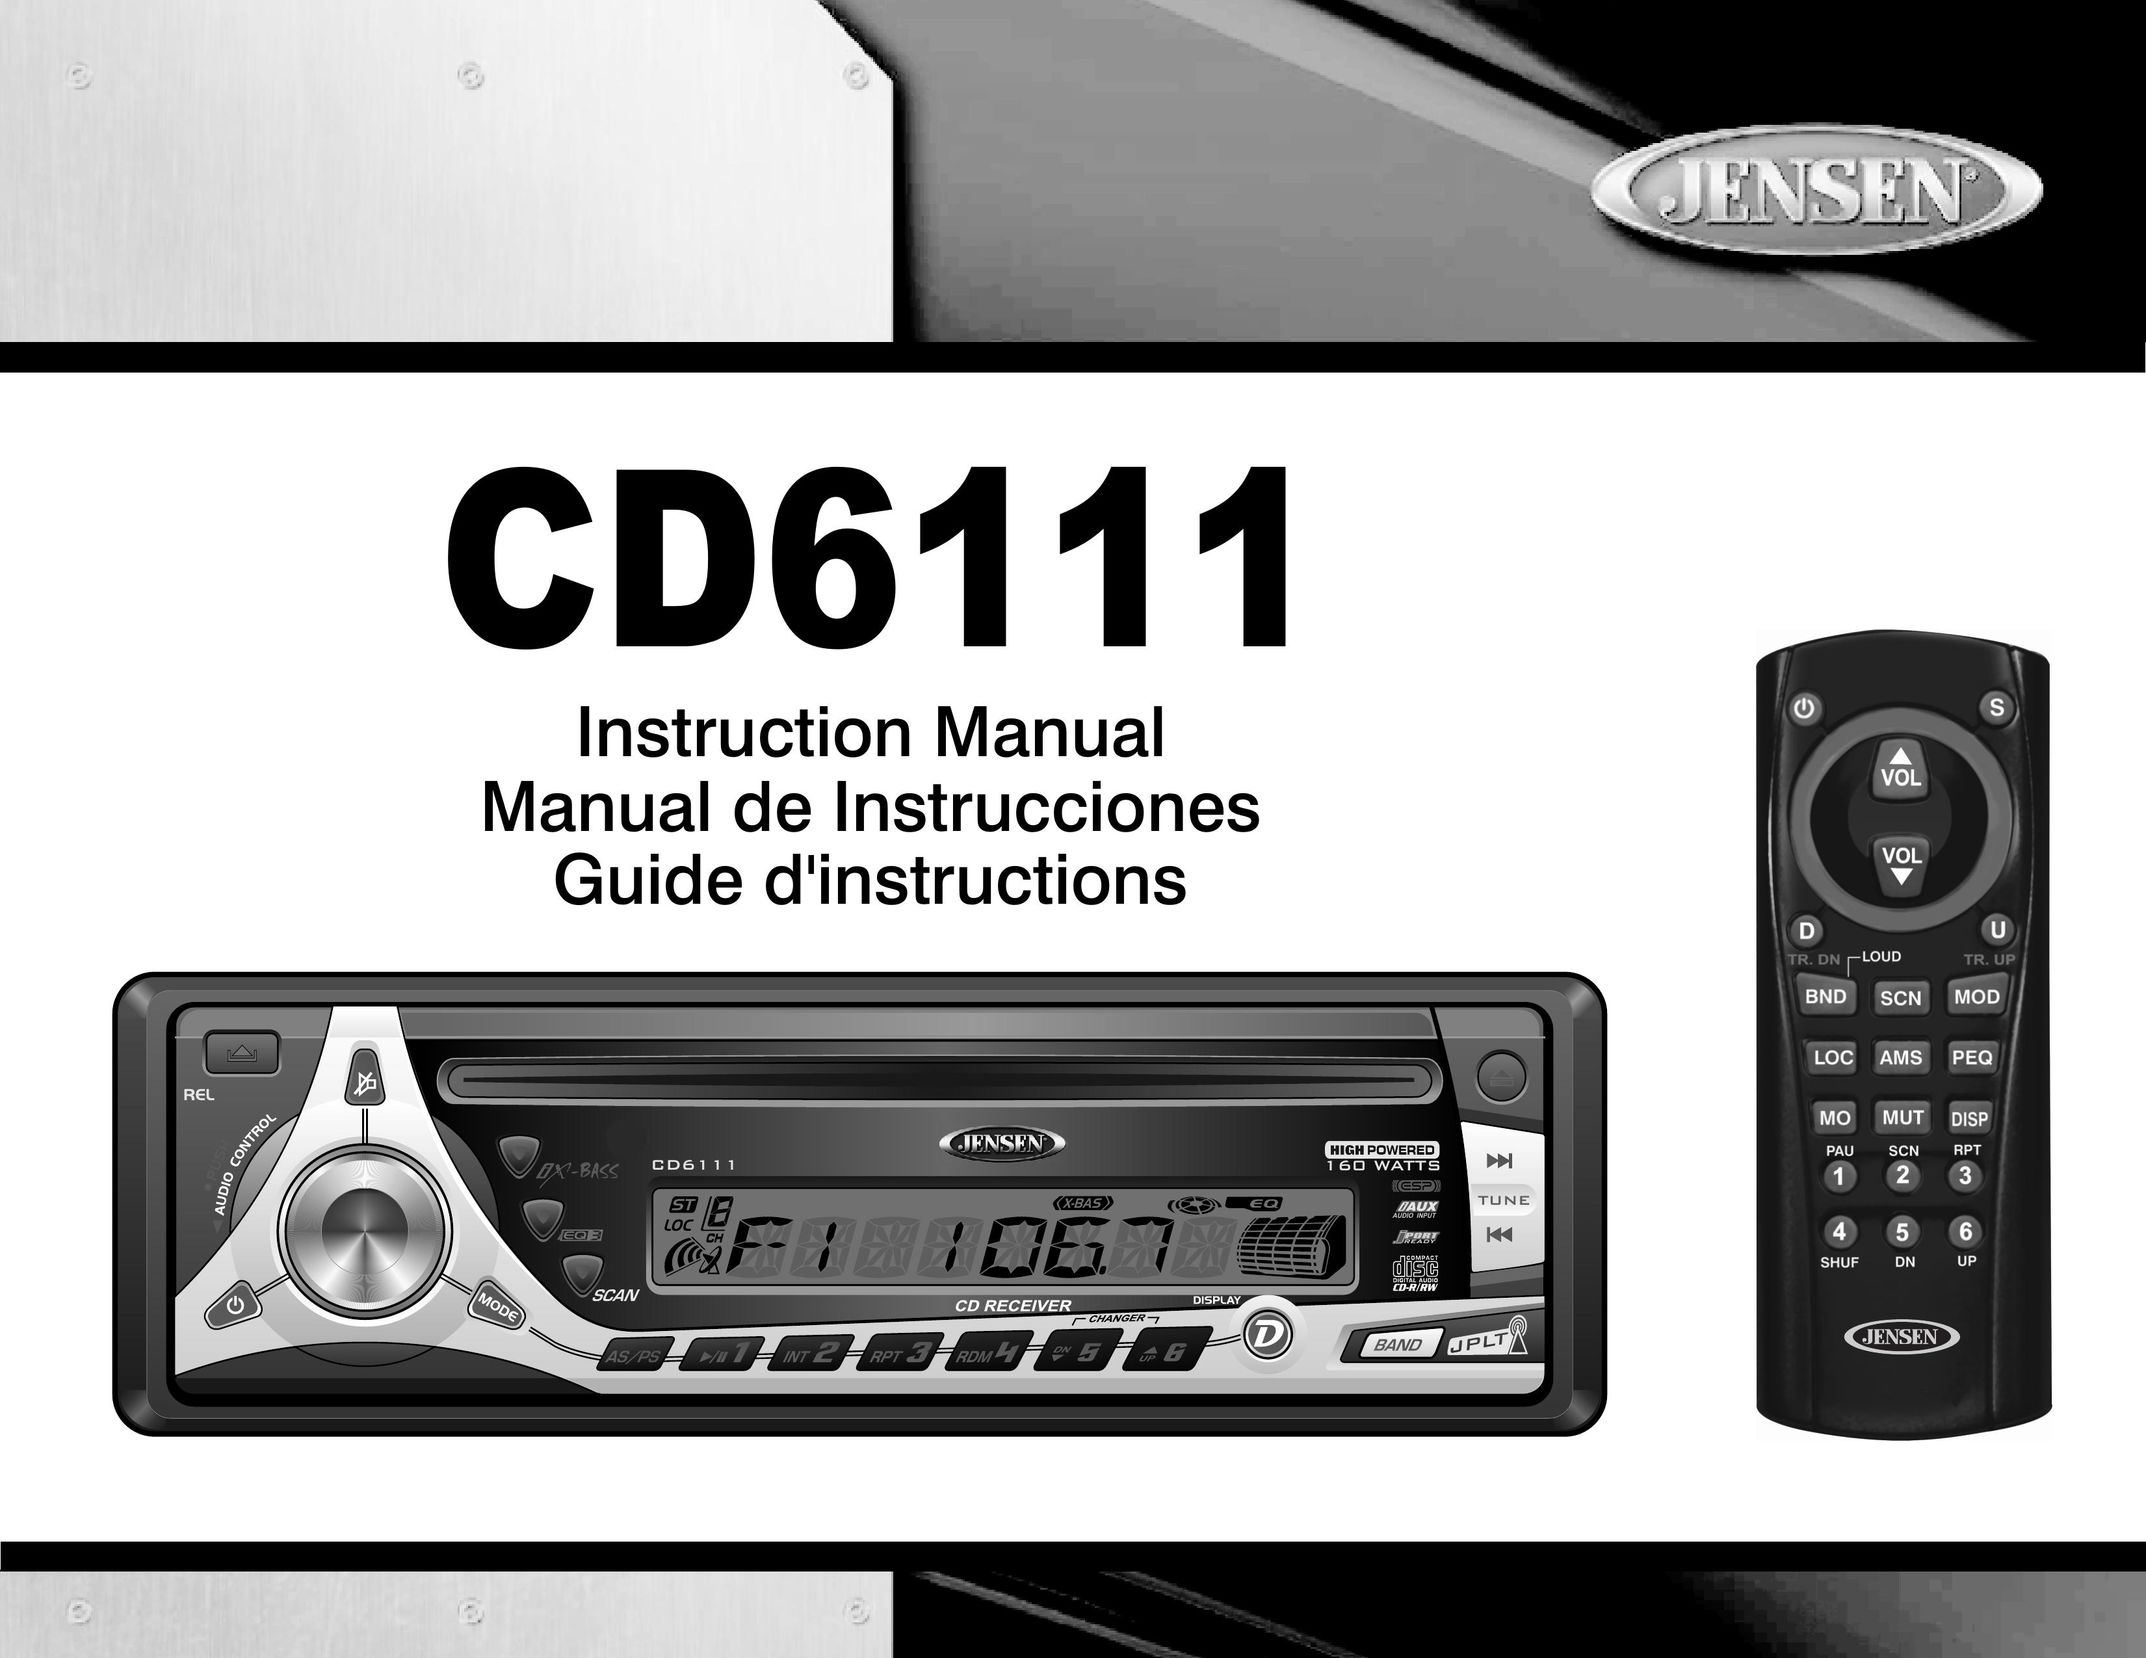 Jensen CD6111 Car Stereo System User Manual